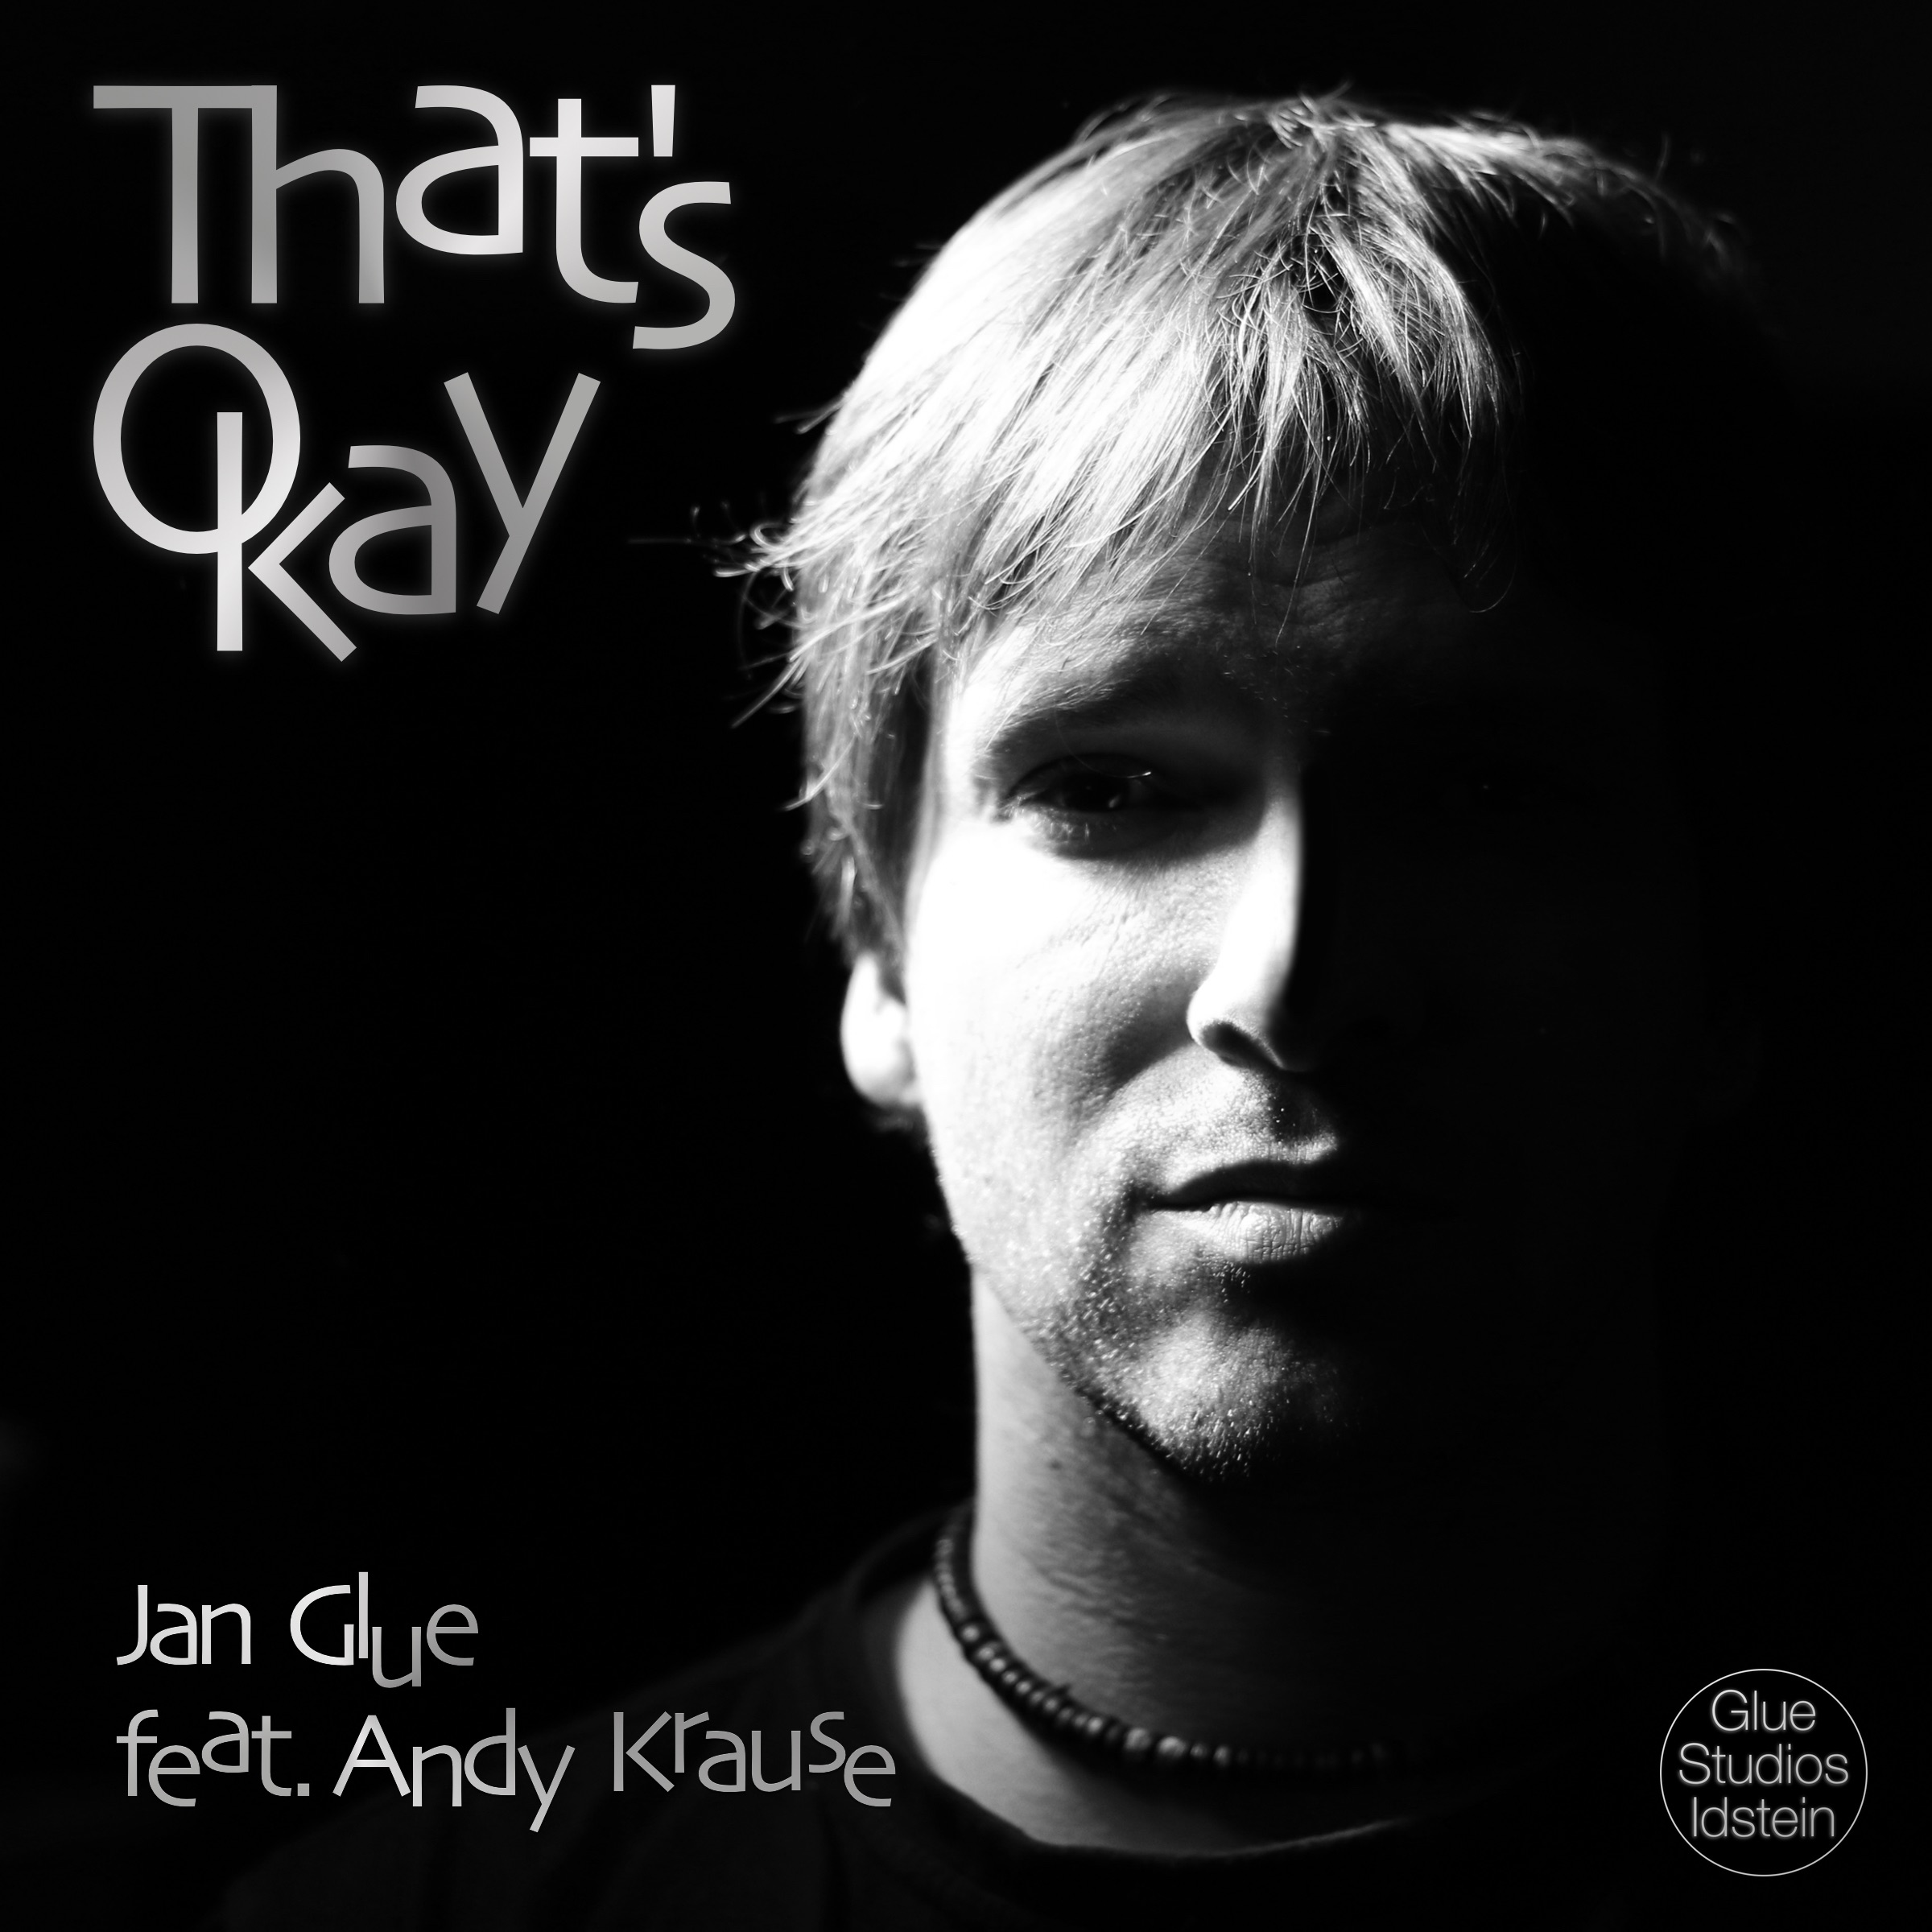 <b>Andy Krause</b>) - Single“ von Jan Glue in iTunes - 2400x2400sr